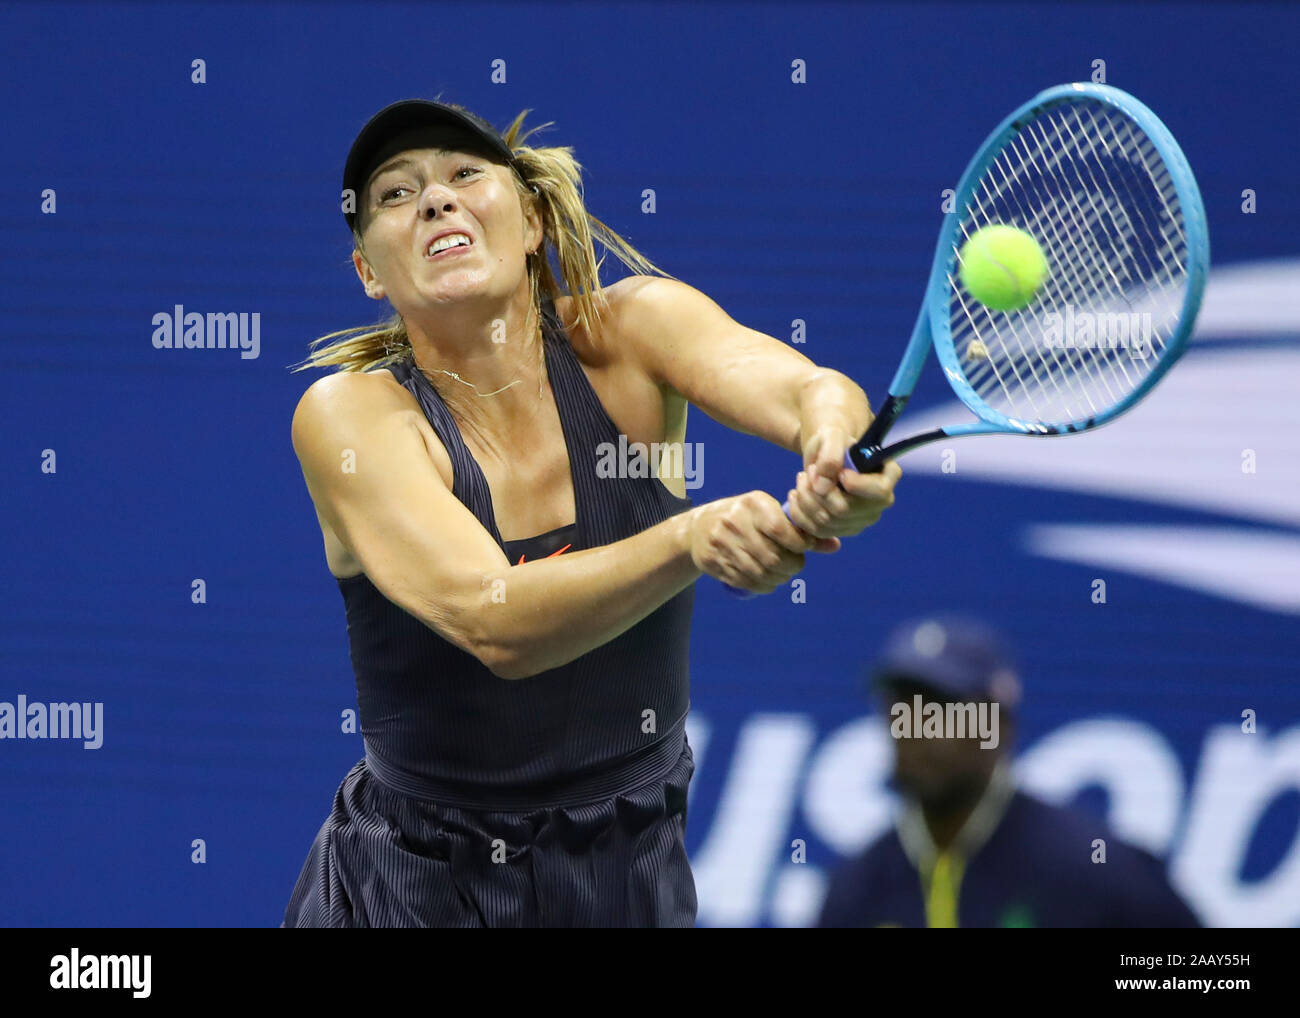 La joueuse de tennis russe Maria Sharapova jouant sauvé, tourné pendant le tournoi de tennis de l'US Open 2019, New York City, New York State, USA Banque D'Images